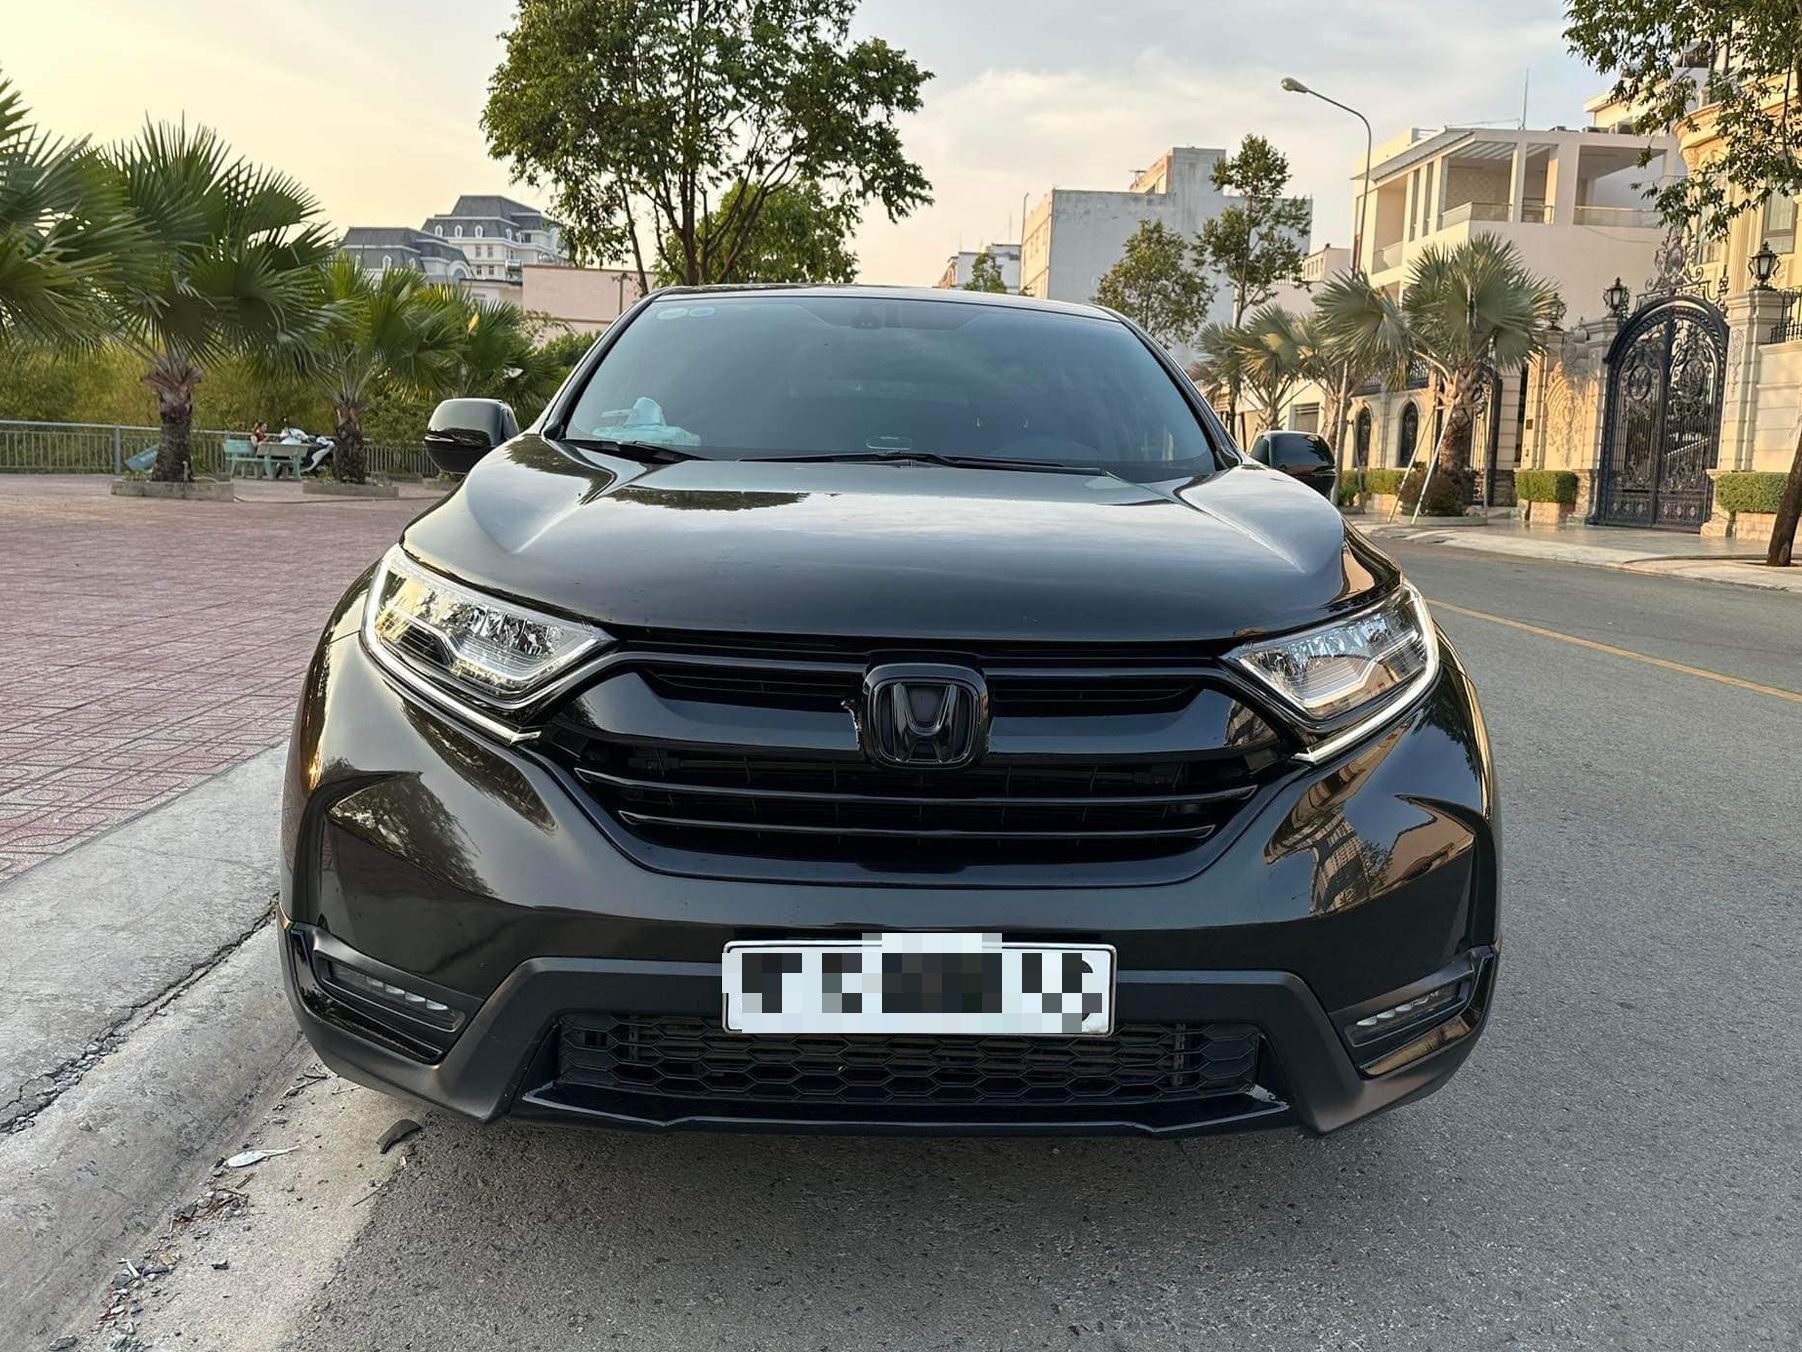 Honda CRV 2018 cũ thét giá hơn 12 tỷ đồng tại Hà Nội